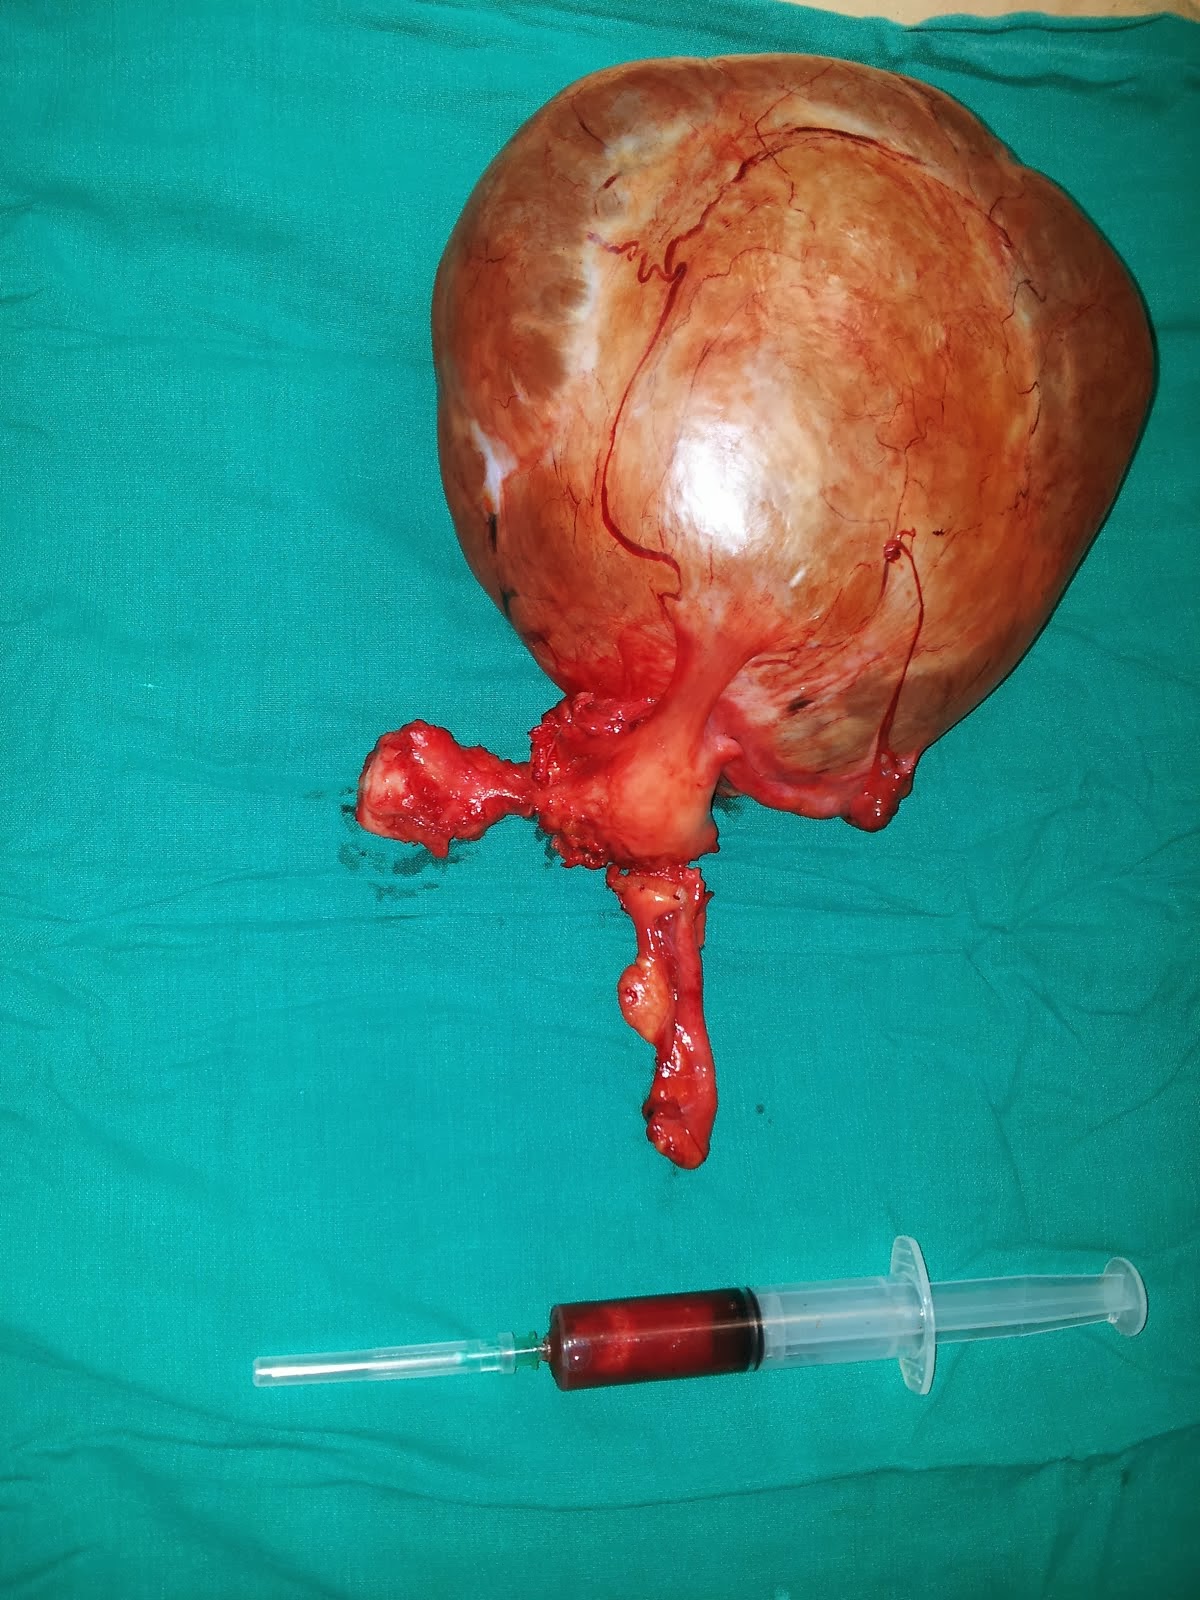 Lt.ovarian mucinous cystadenoma